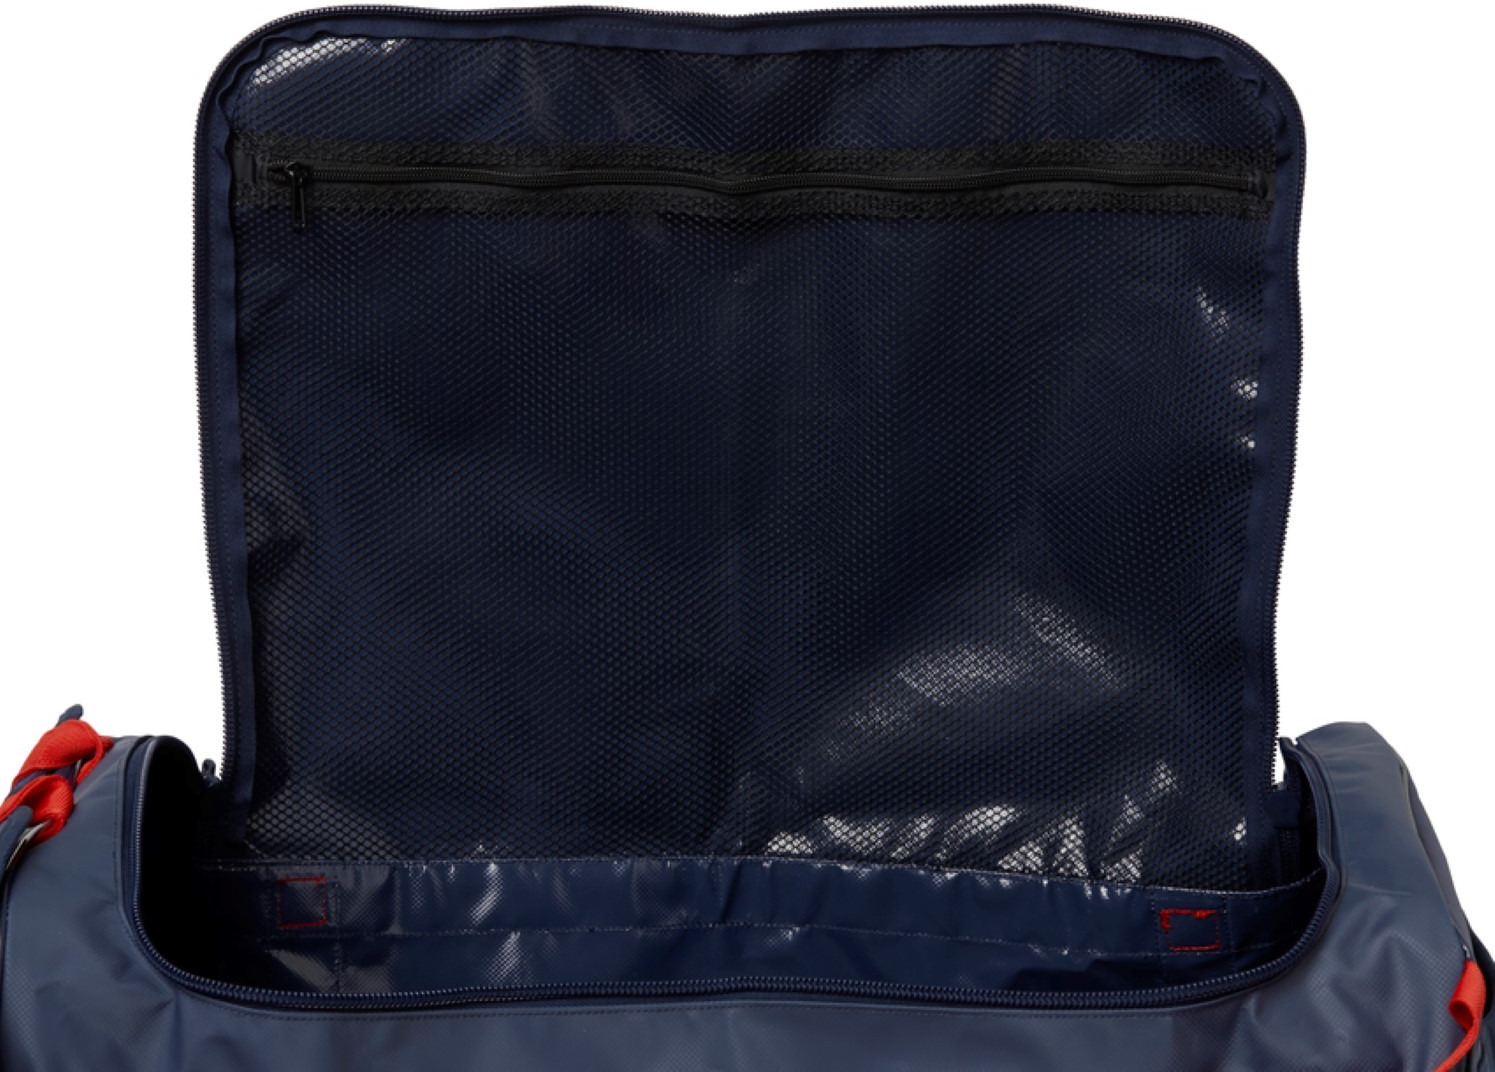 фото Сумка Helly Hansen Hh Classic Duffel Bag, 67169_689, темно-синий